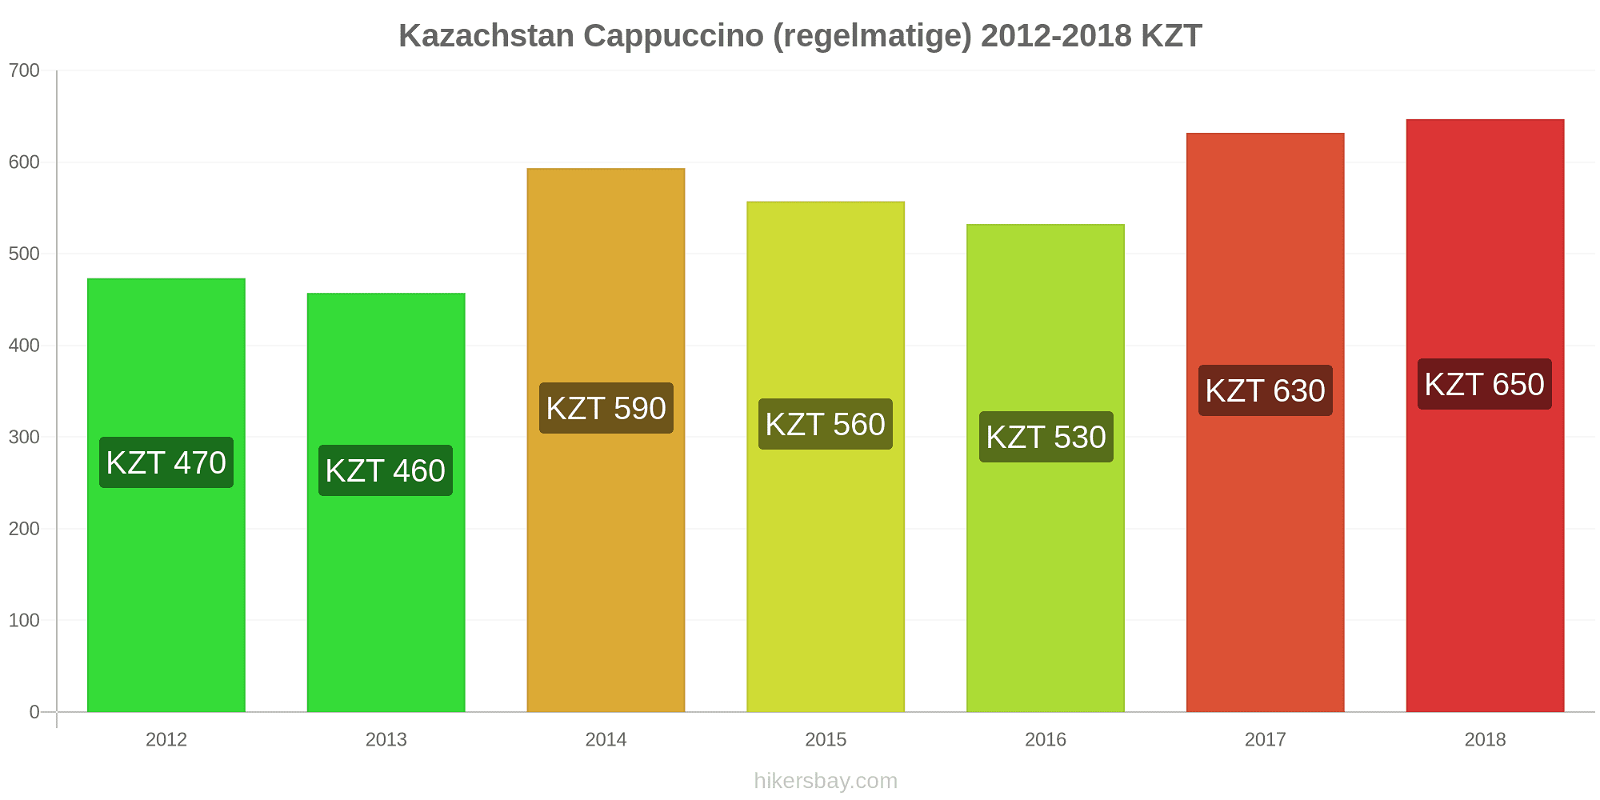 Kazachstan prijswijzigingen Cappuccino hikersbay.com